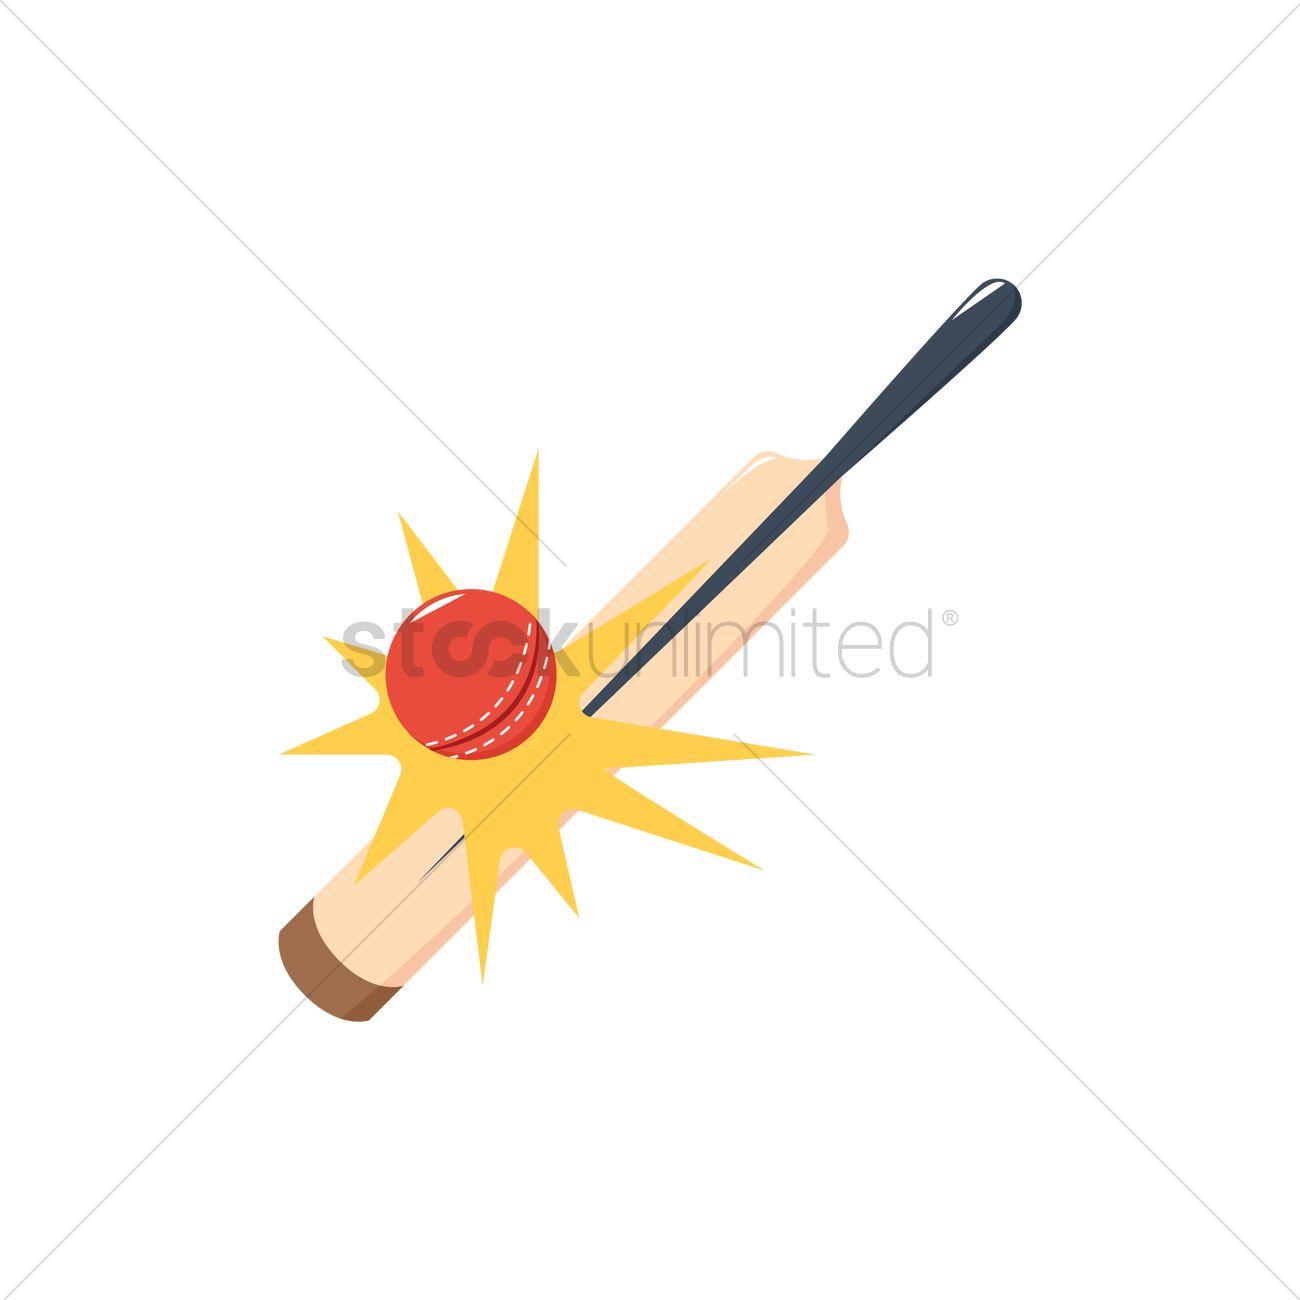 Bat Hitting Ball Logo - Cricket bat hits ball Vector Image - 1949853 | StockUnlimited